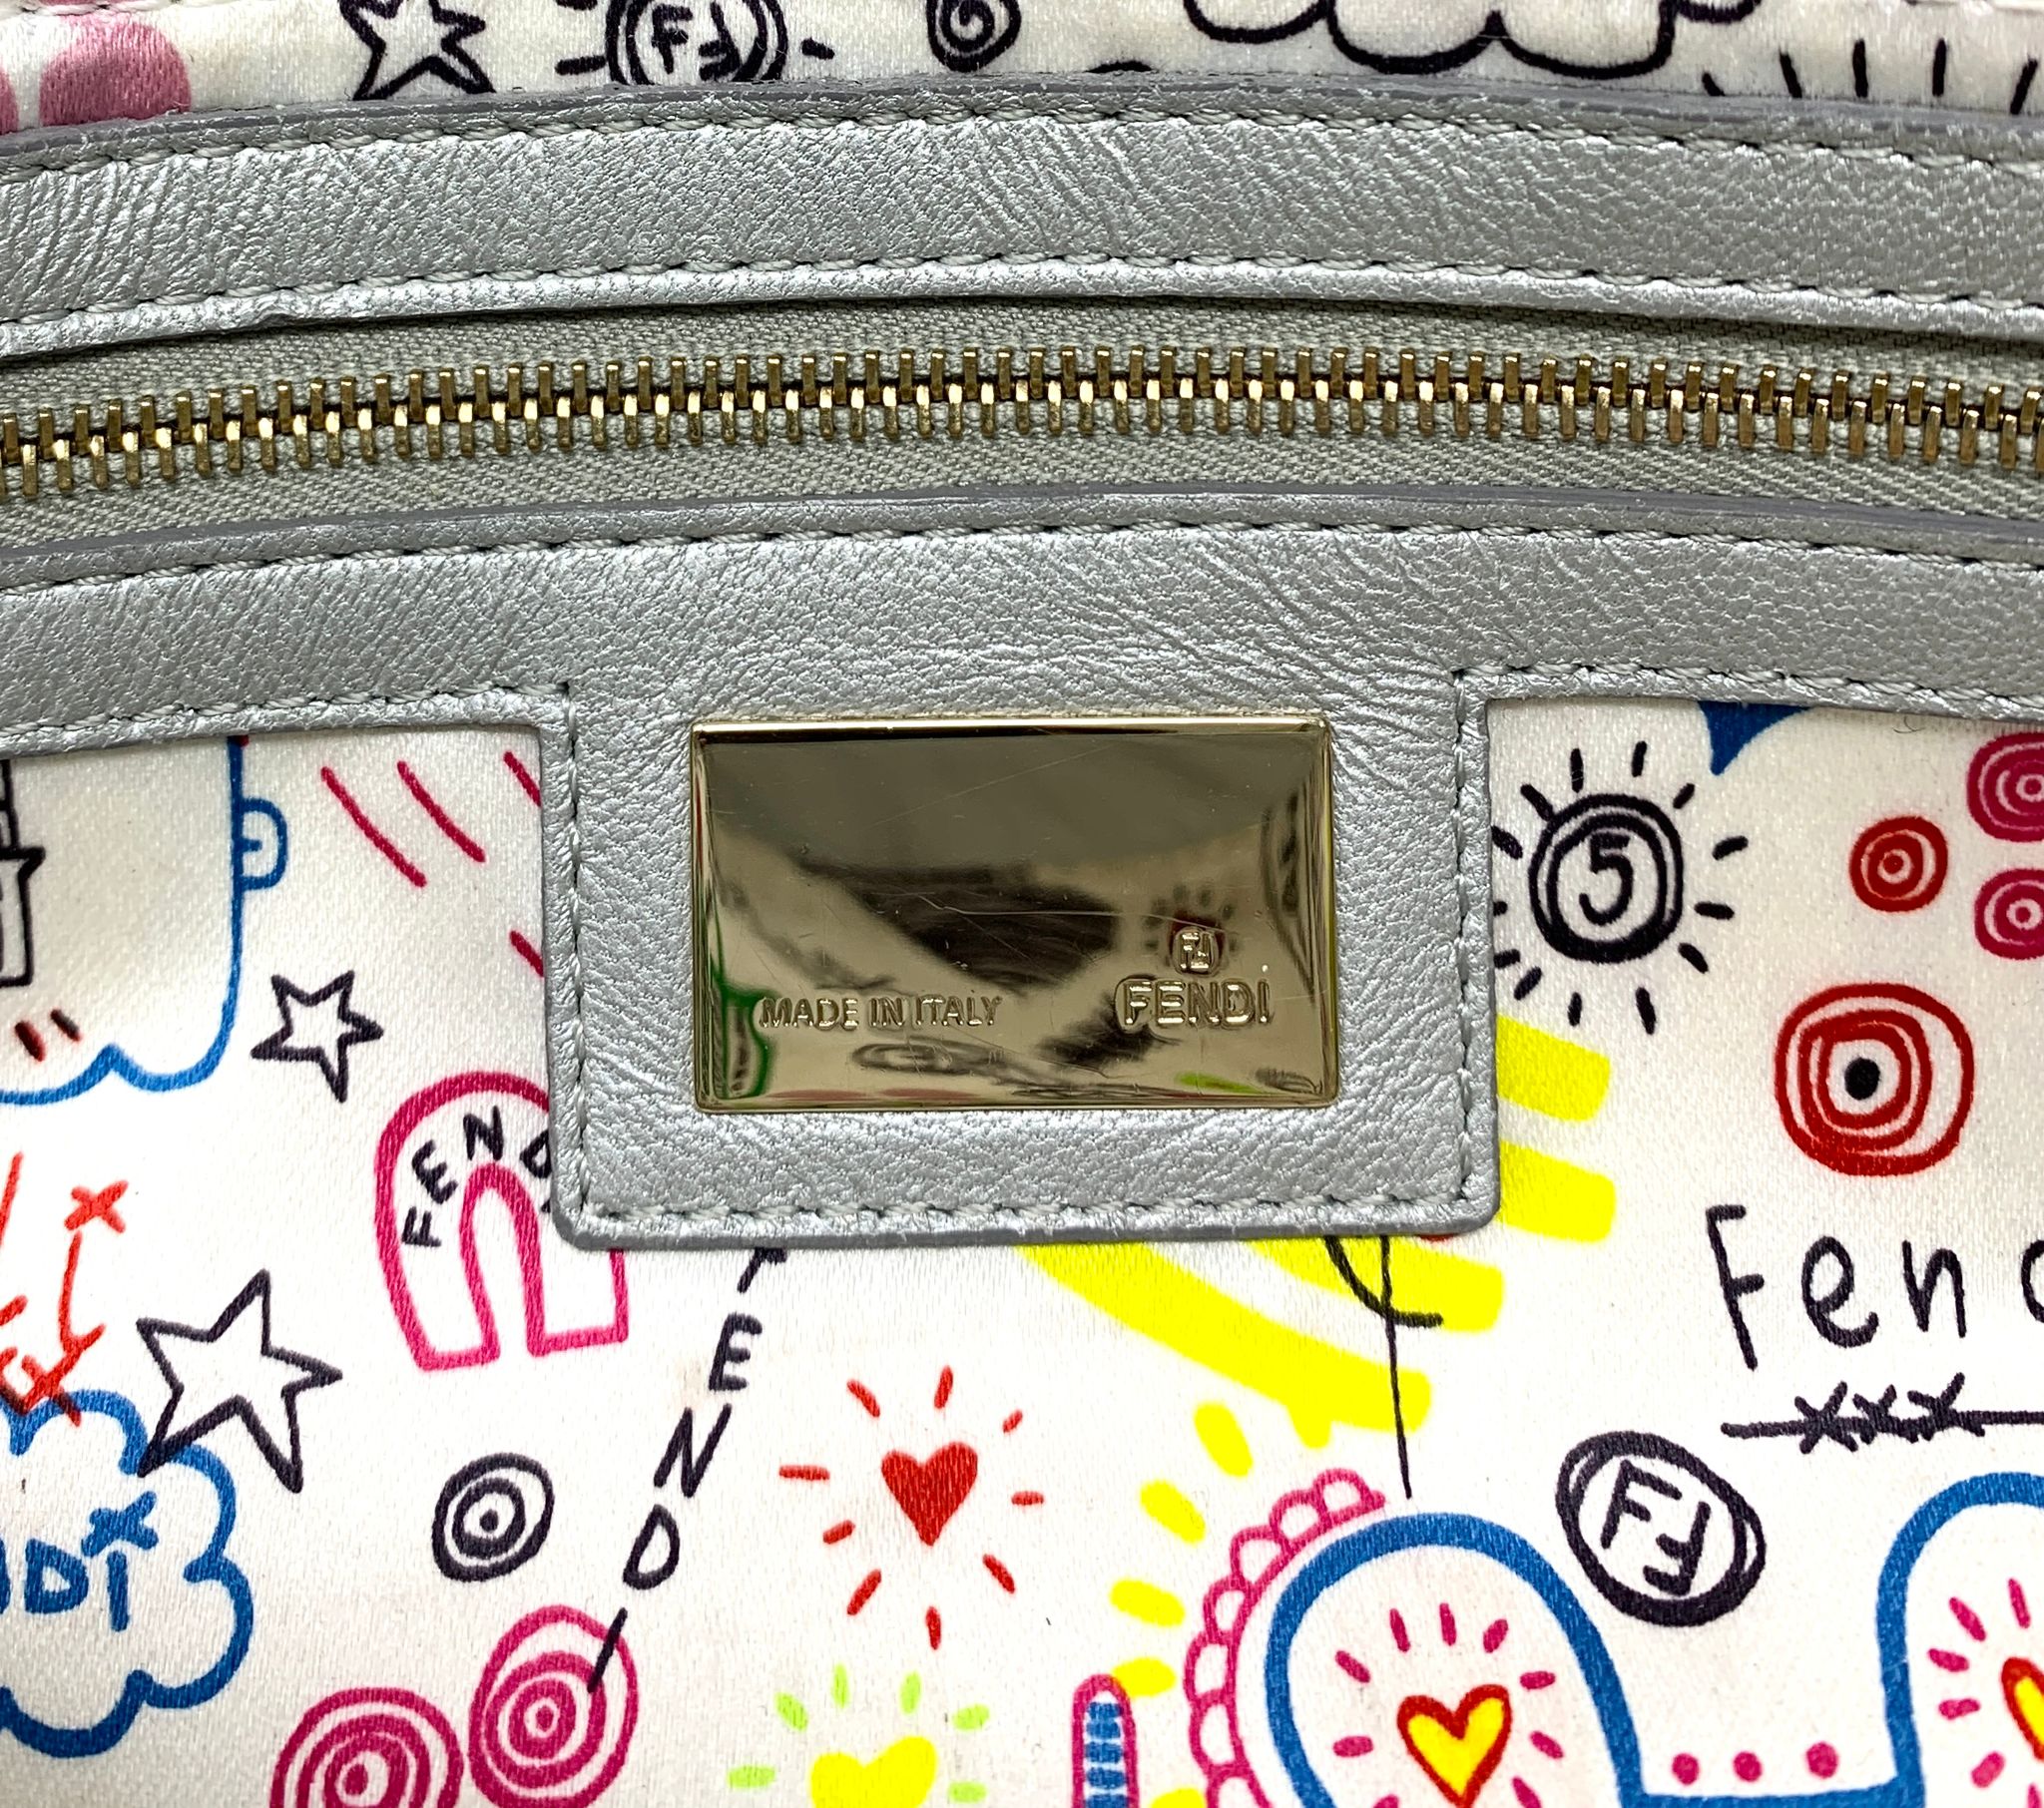 Fendi Silver Embossed Logo Baguette Bag - Handbags